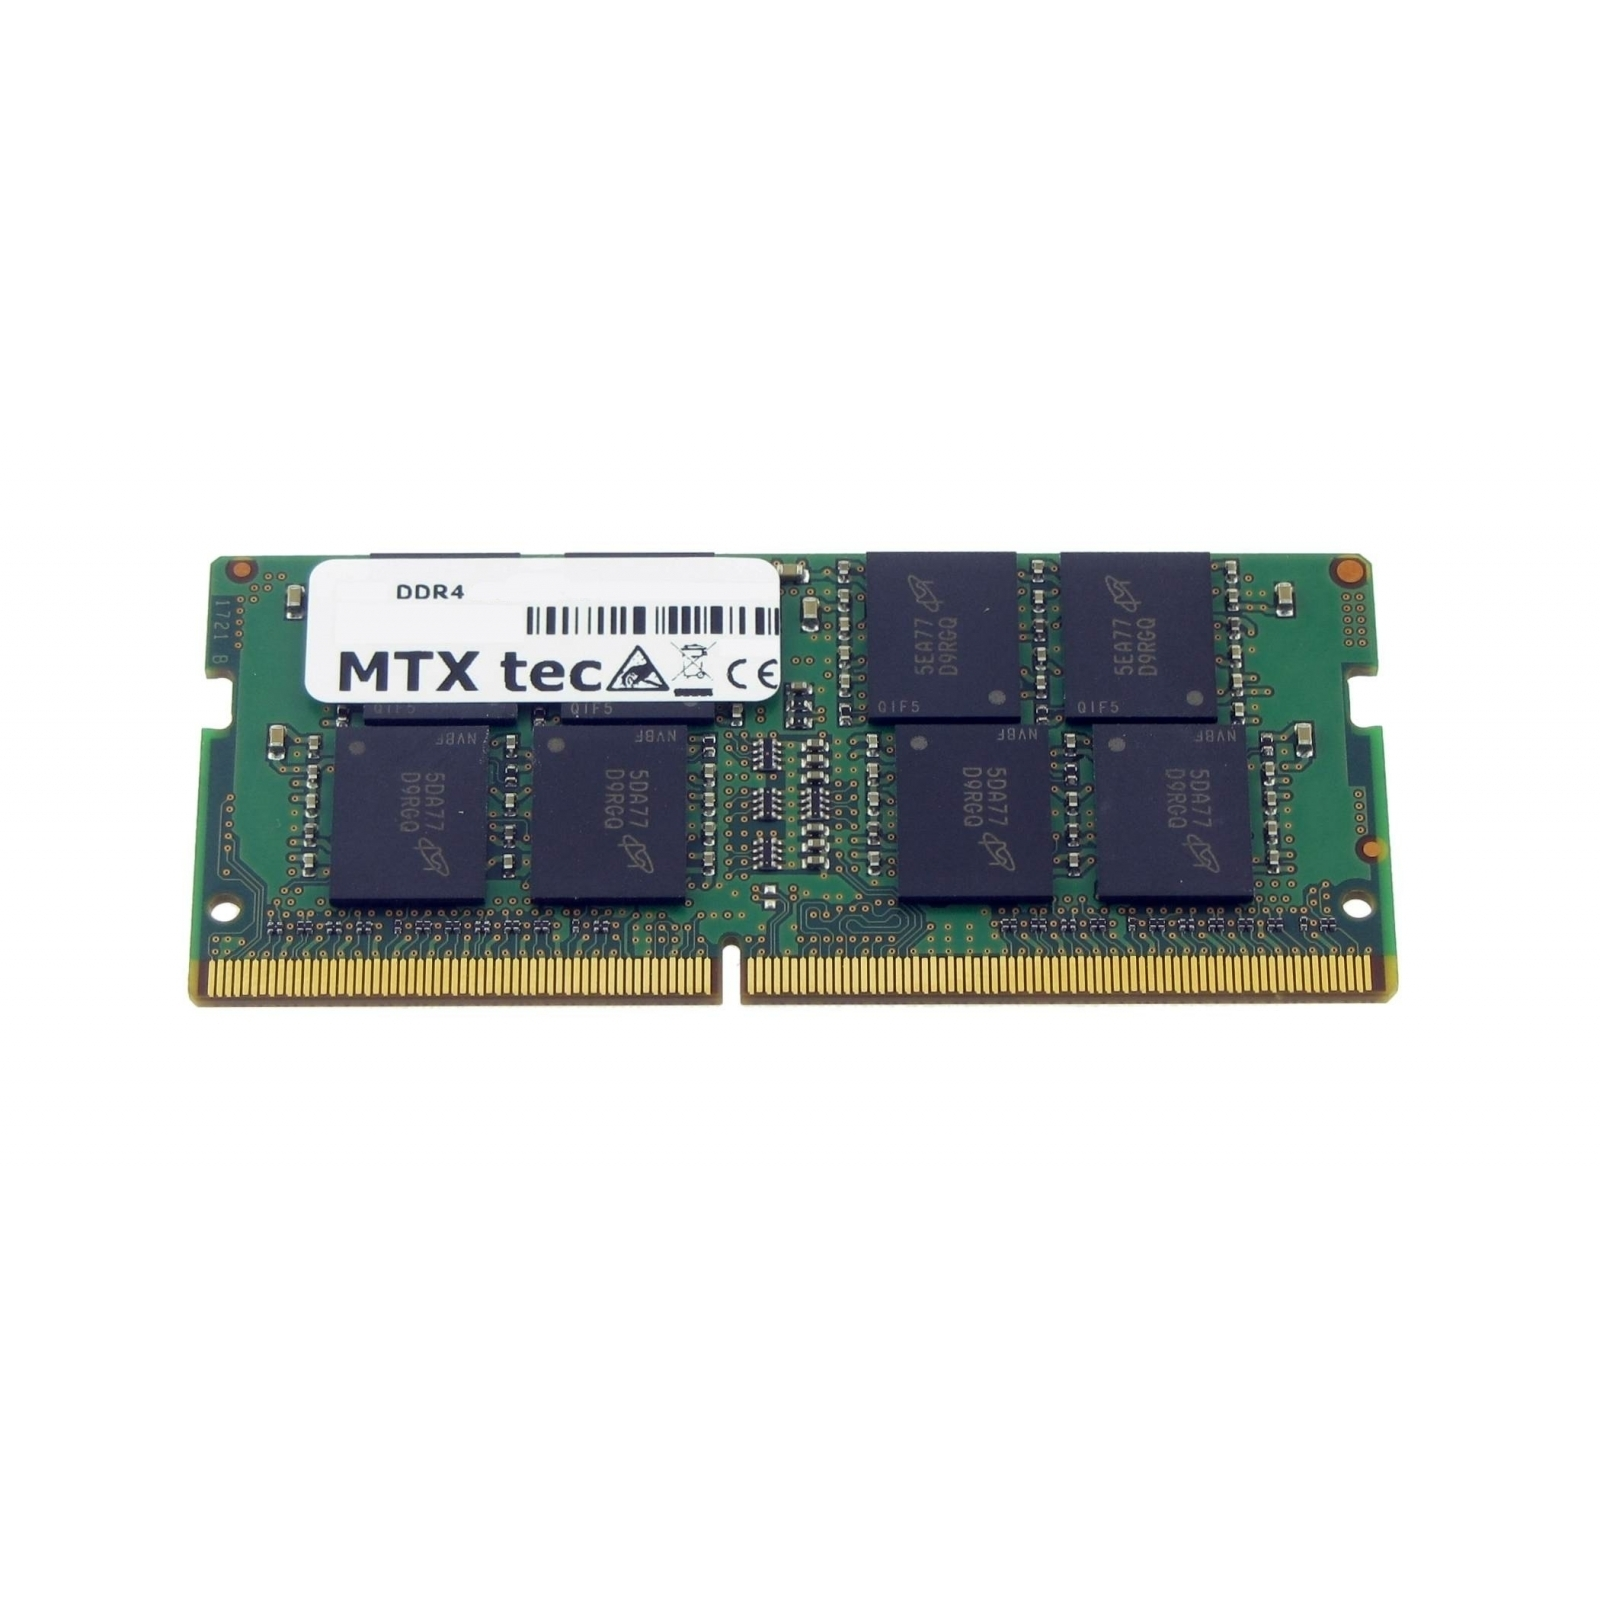 G5 850 8 Notebook-Speicher HP MTXTEC EliteBook für (2FH35AV) RAM GB GB 8 Arbeitsspeicher DDR4